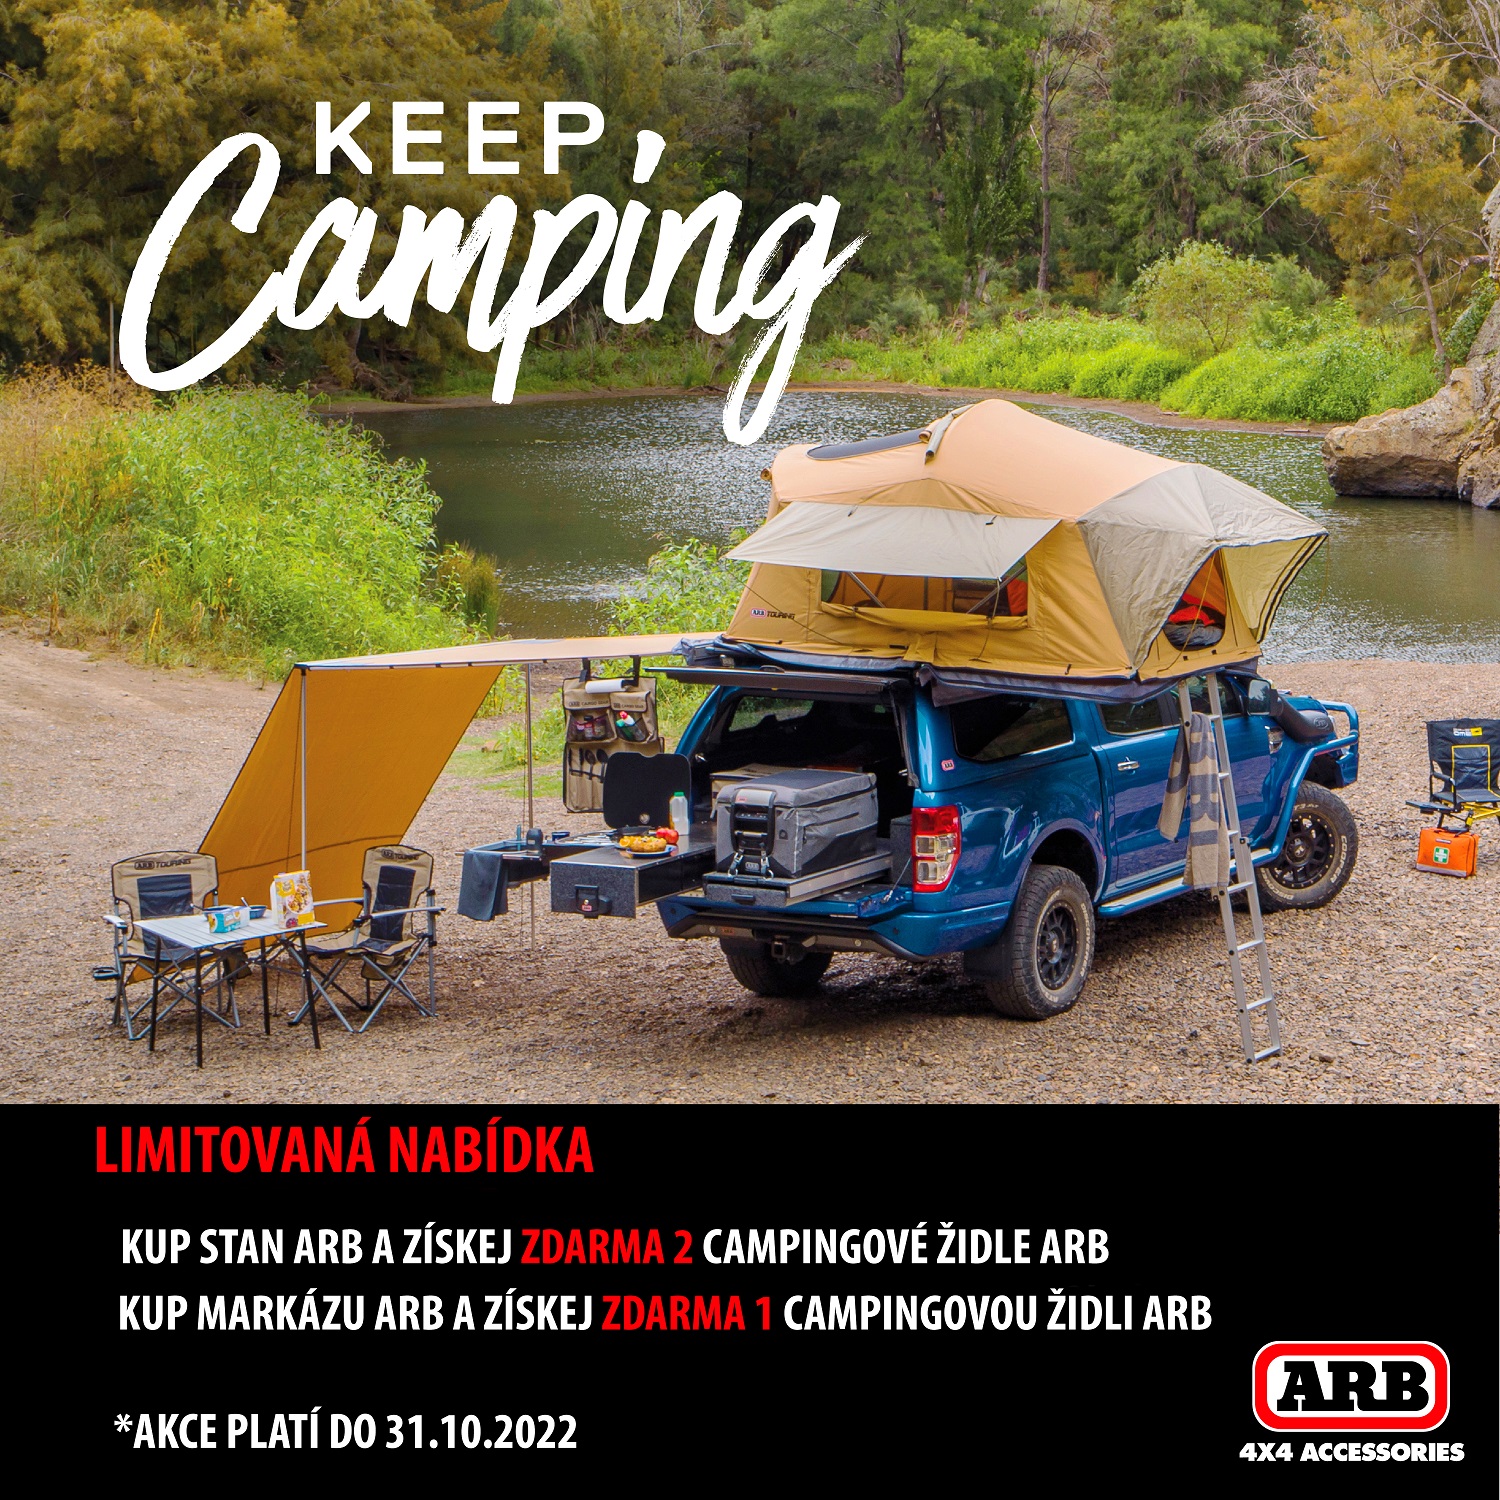 Keep Camping